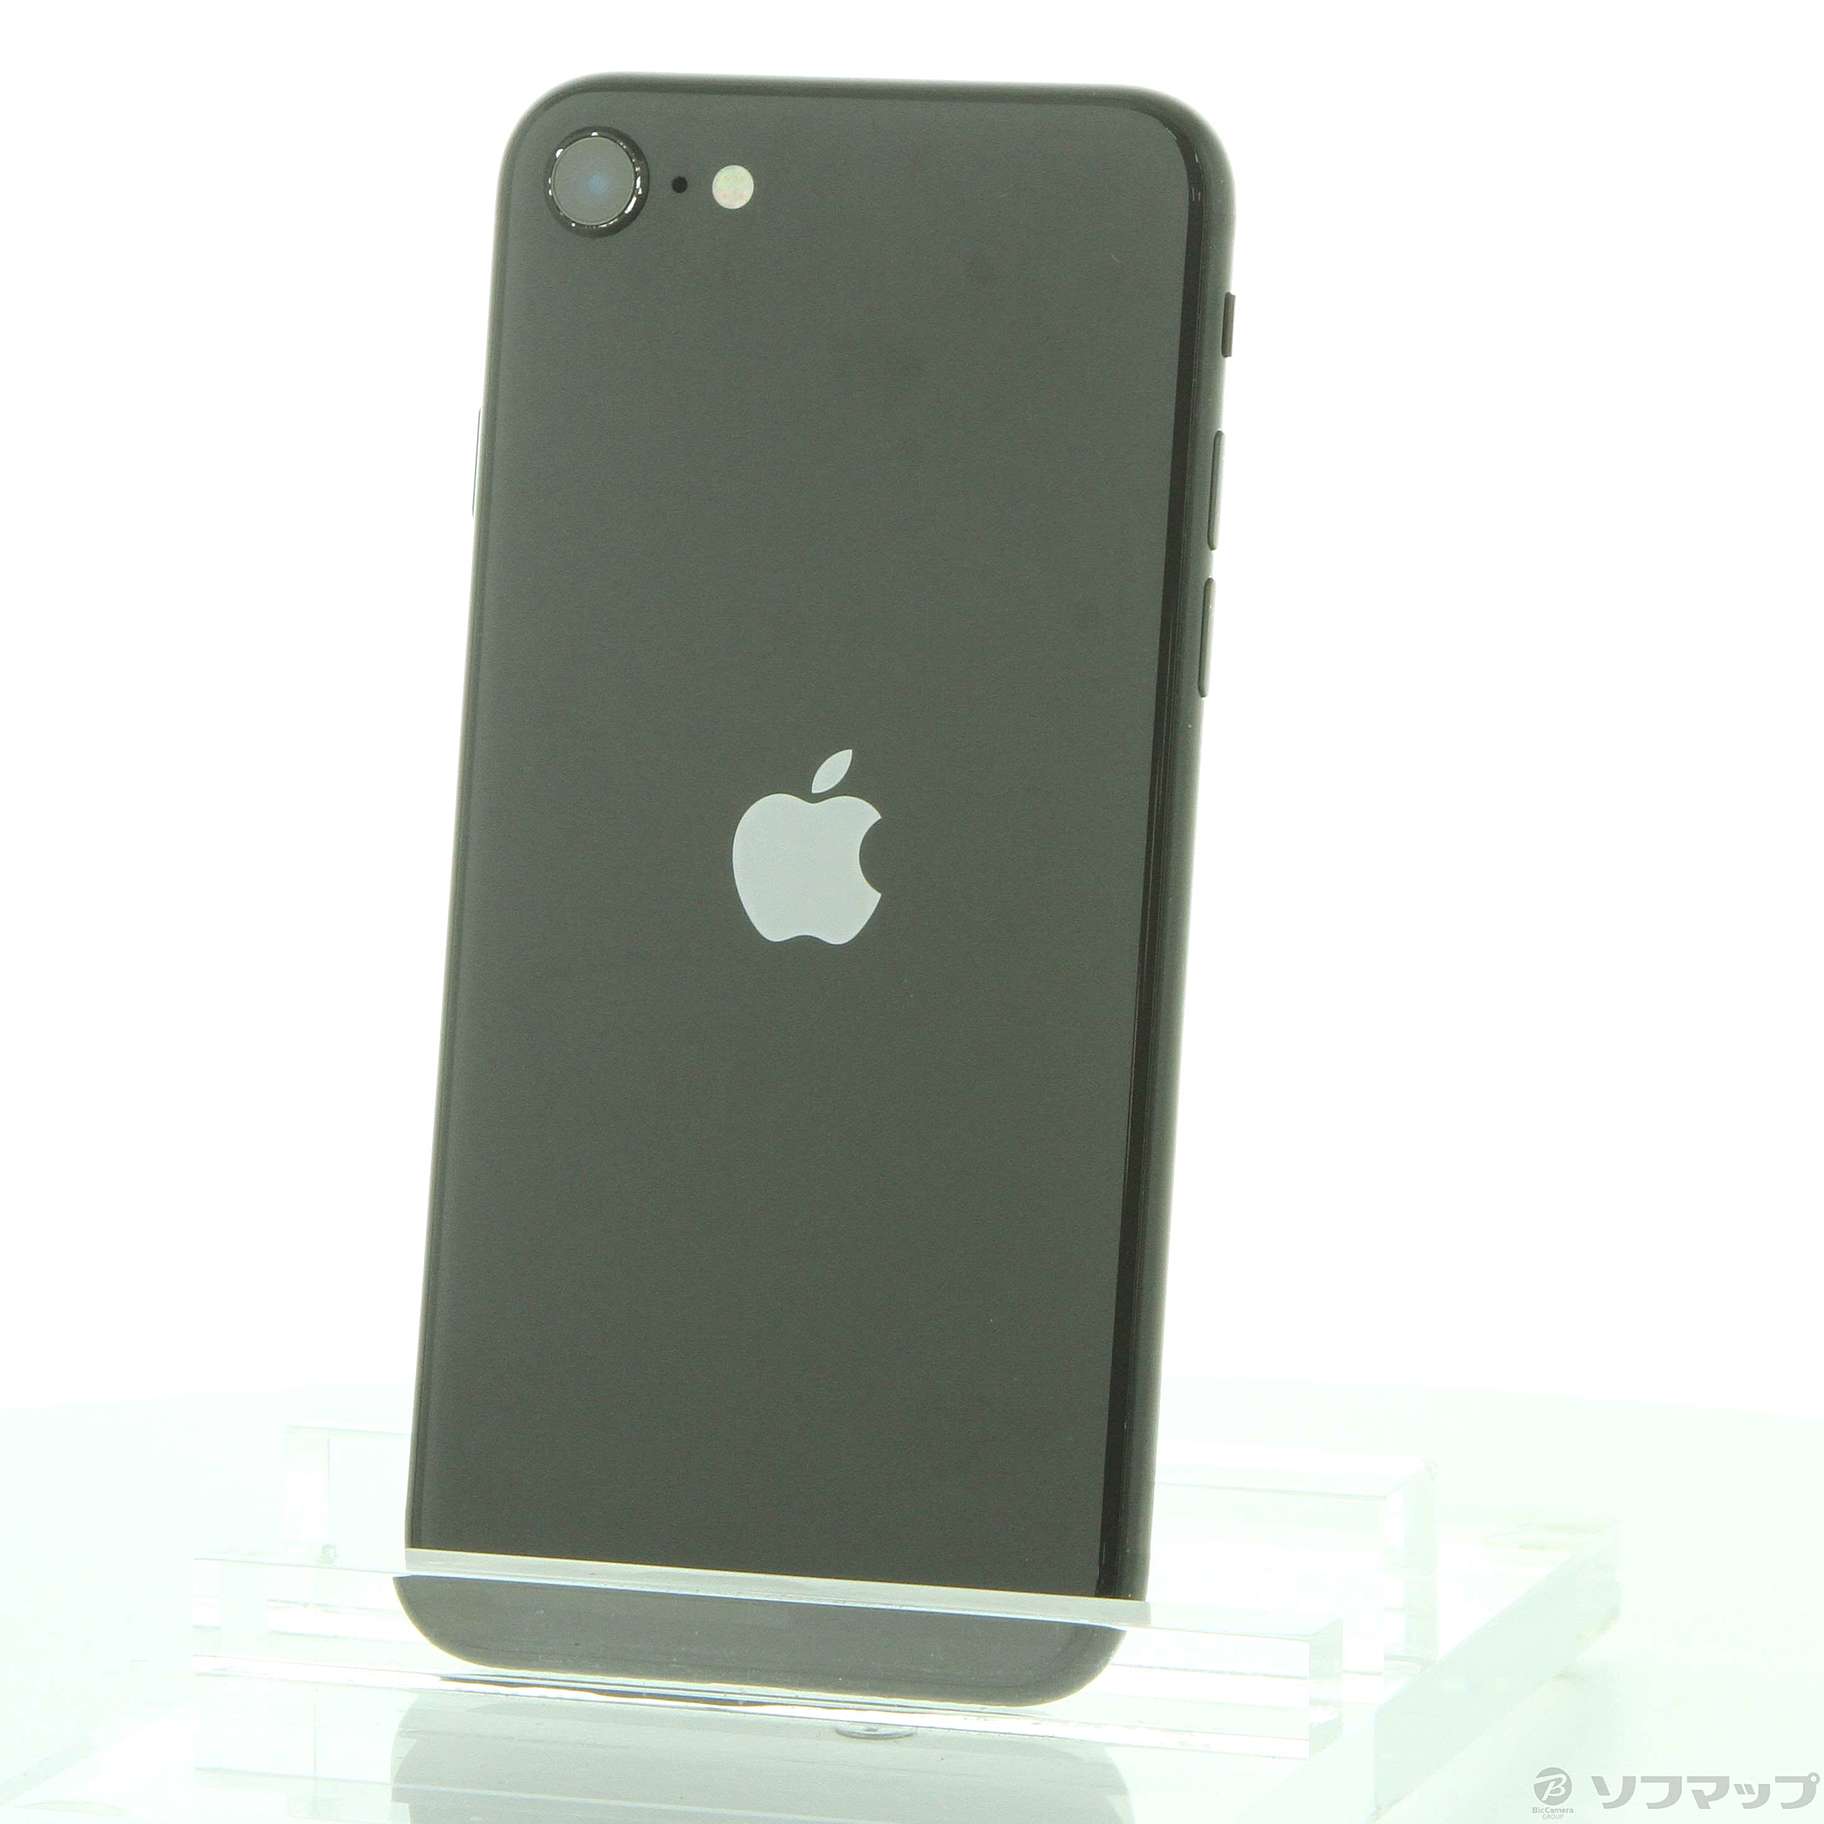 Apple iPhone SE 第2世代 64GB ブラック MHGP 3J/A - スマートフォン 